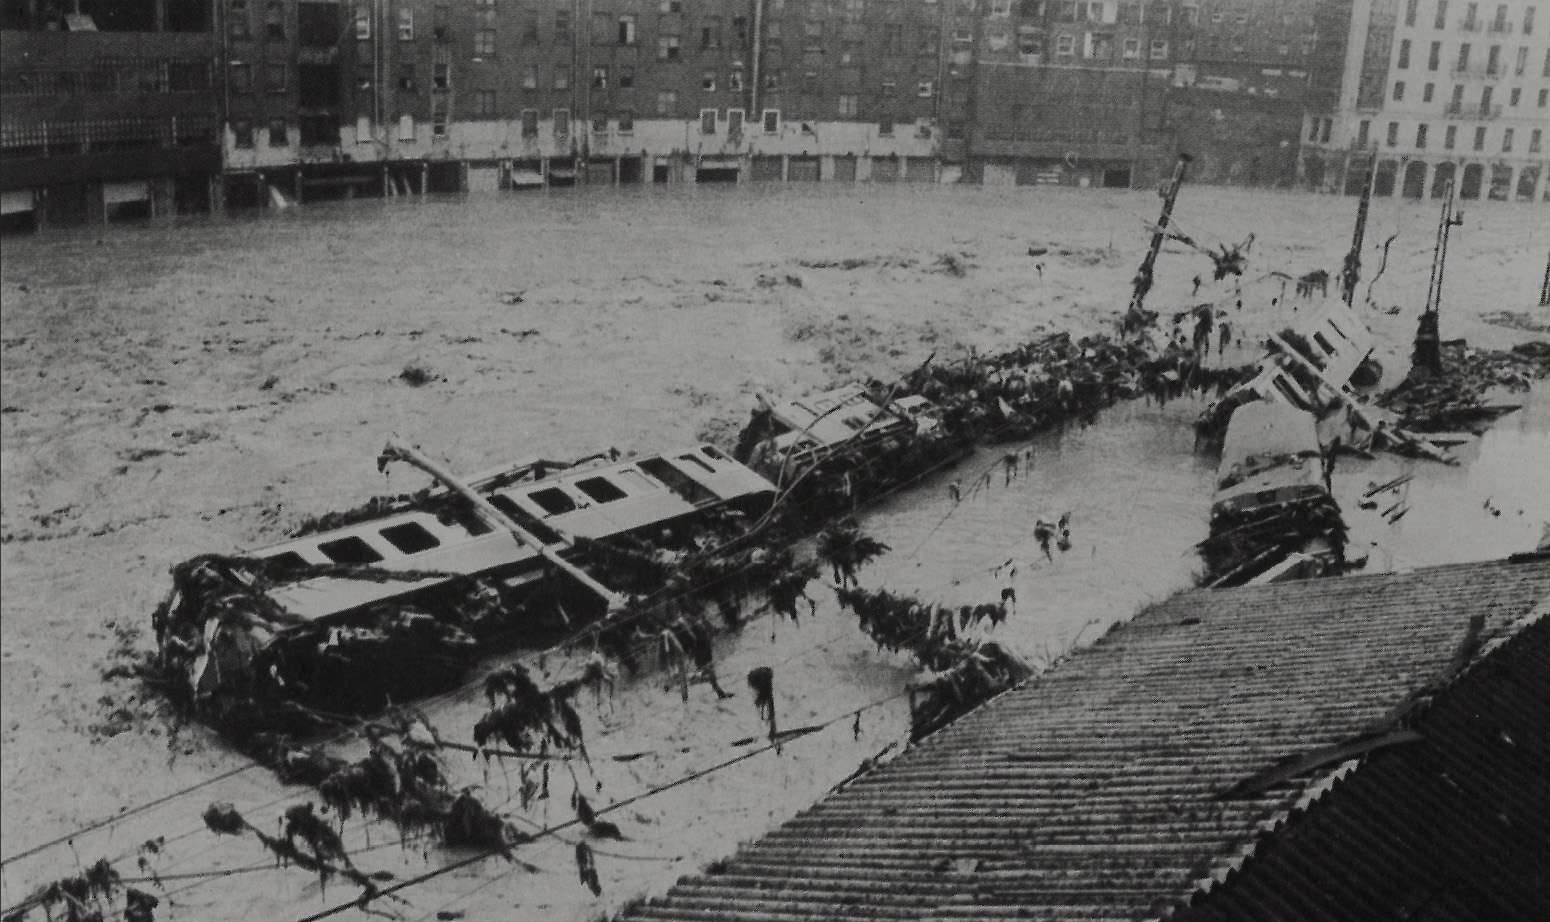 Imagen en blanco y negro de Bilbao donde aparece un rio desbordado que ha arrastrado y destrozado un antiguo tren. El agua ha arrasado con todo a su paso.